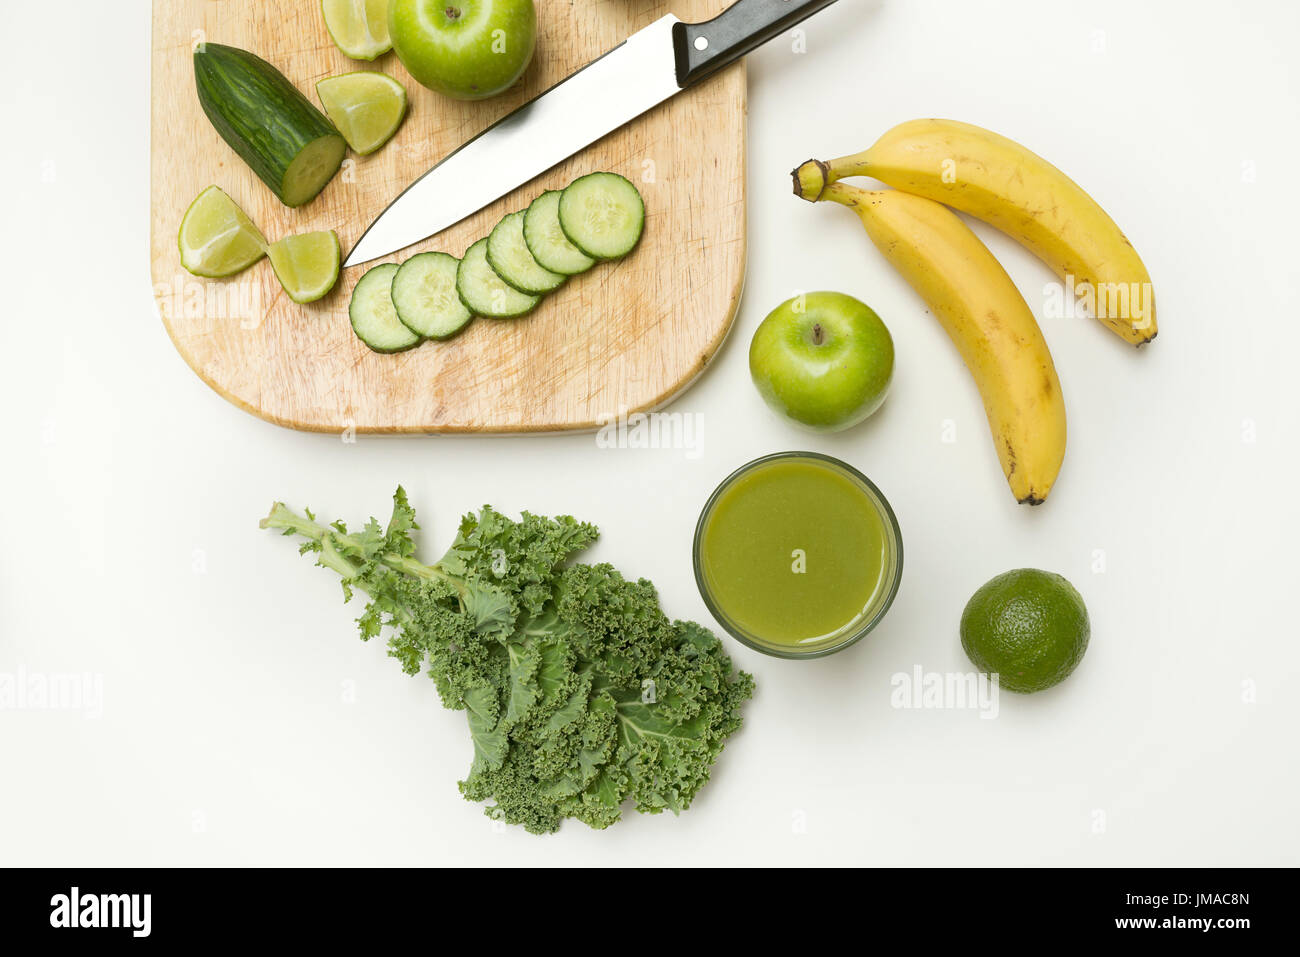 Vue du haut vers le bas d'un mode de vie sain smoothie vert fait à partir de fruits et légumes sur un fond blanc. Concept de vie. Banque D'Images